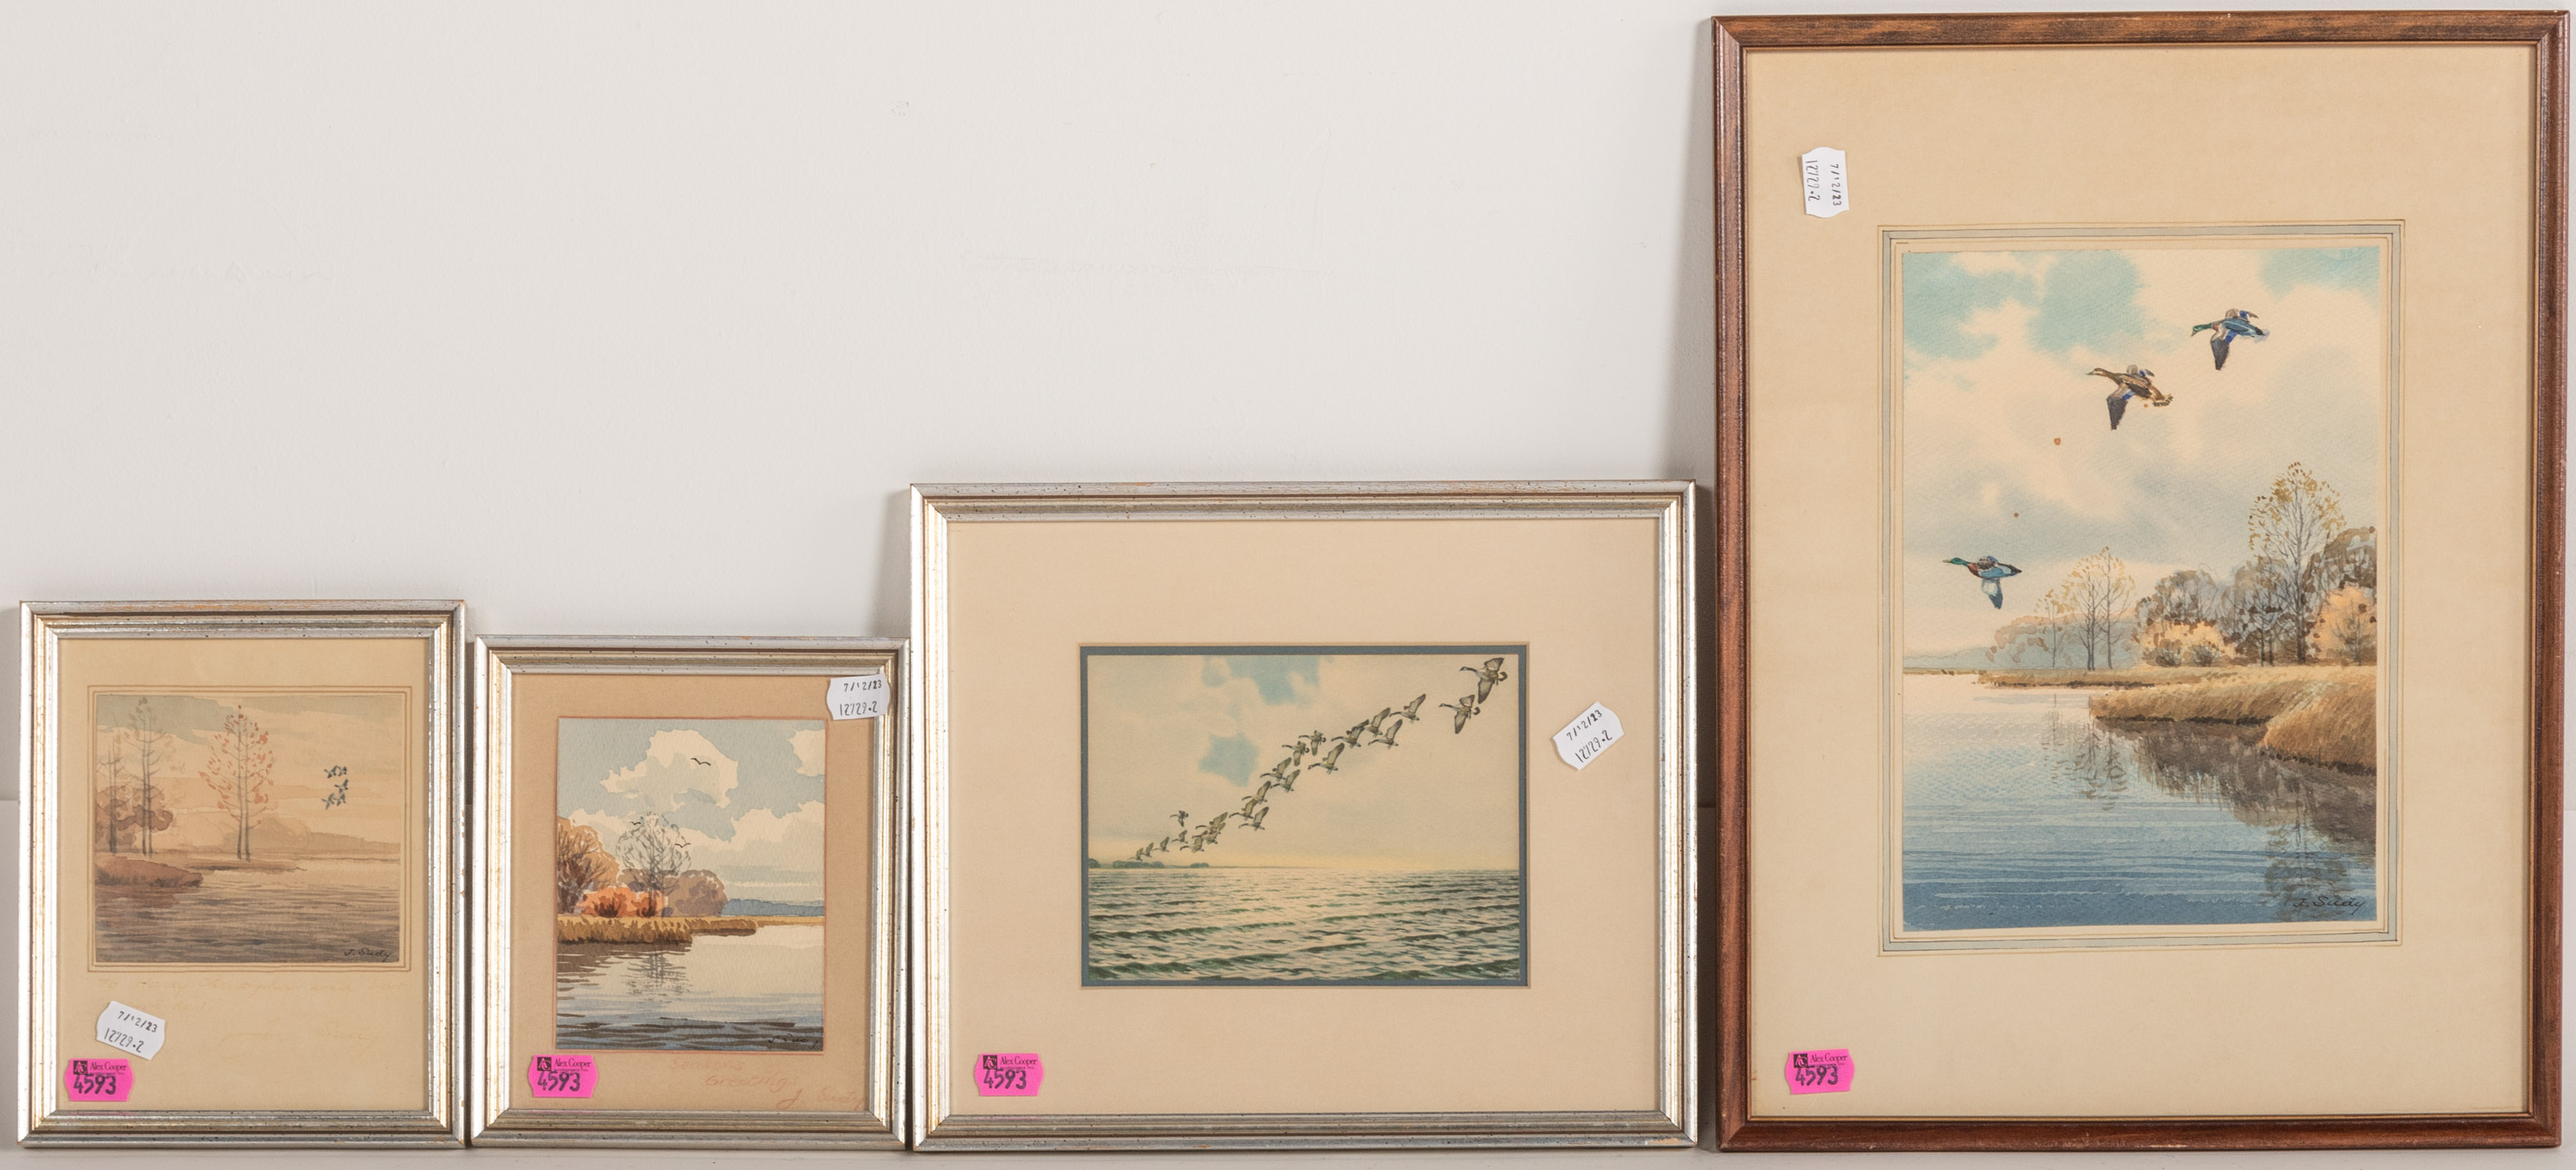 JOHN SUDY. FOUR FRAMED ARTWORKS